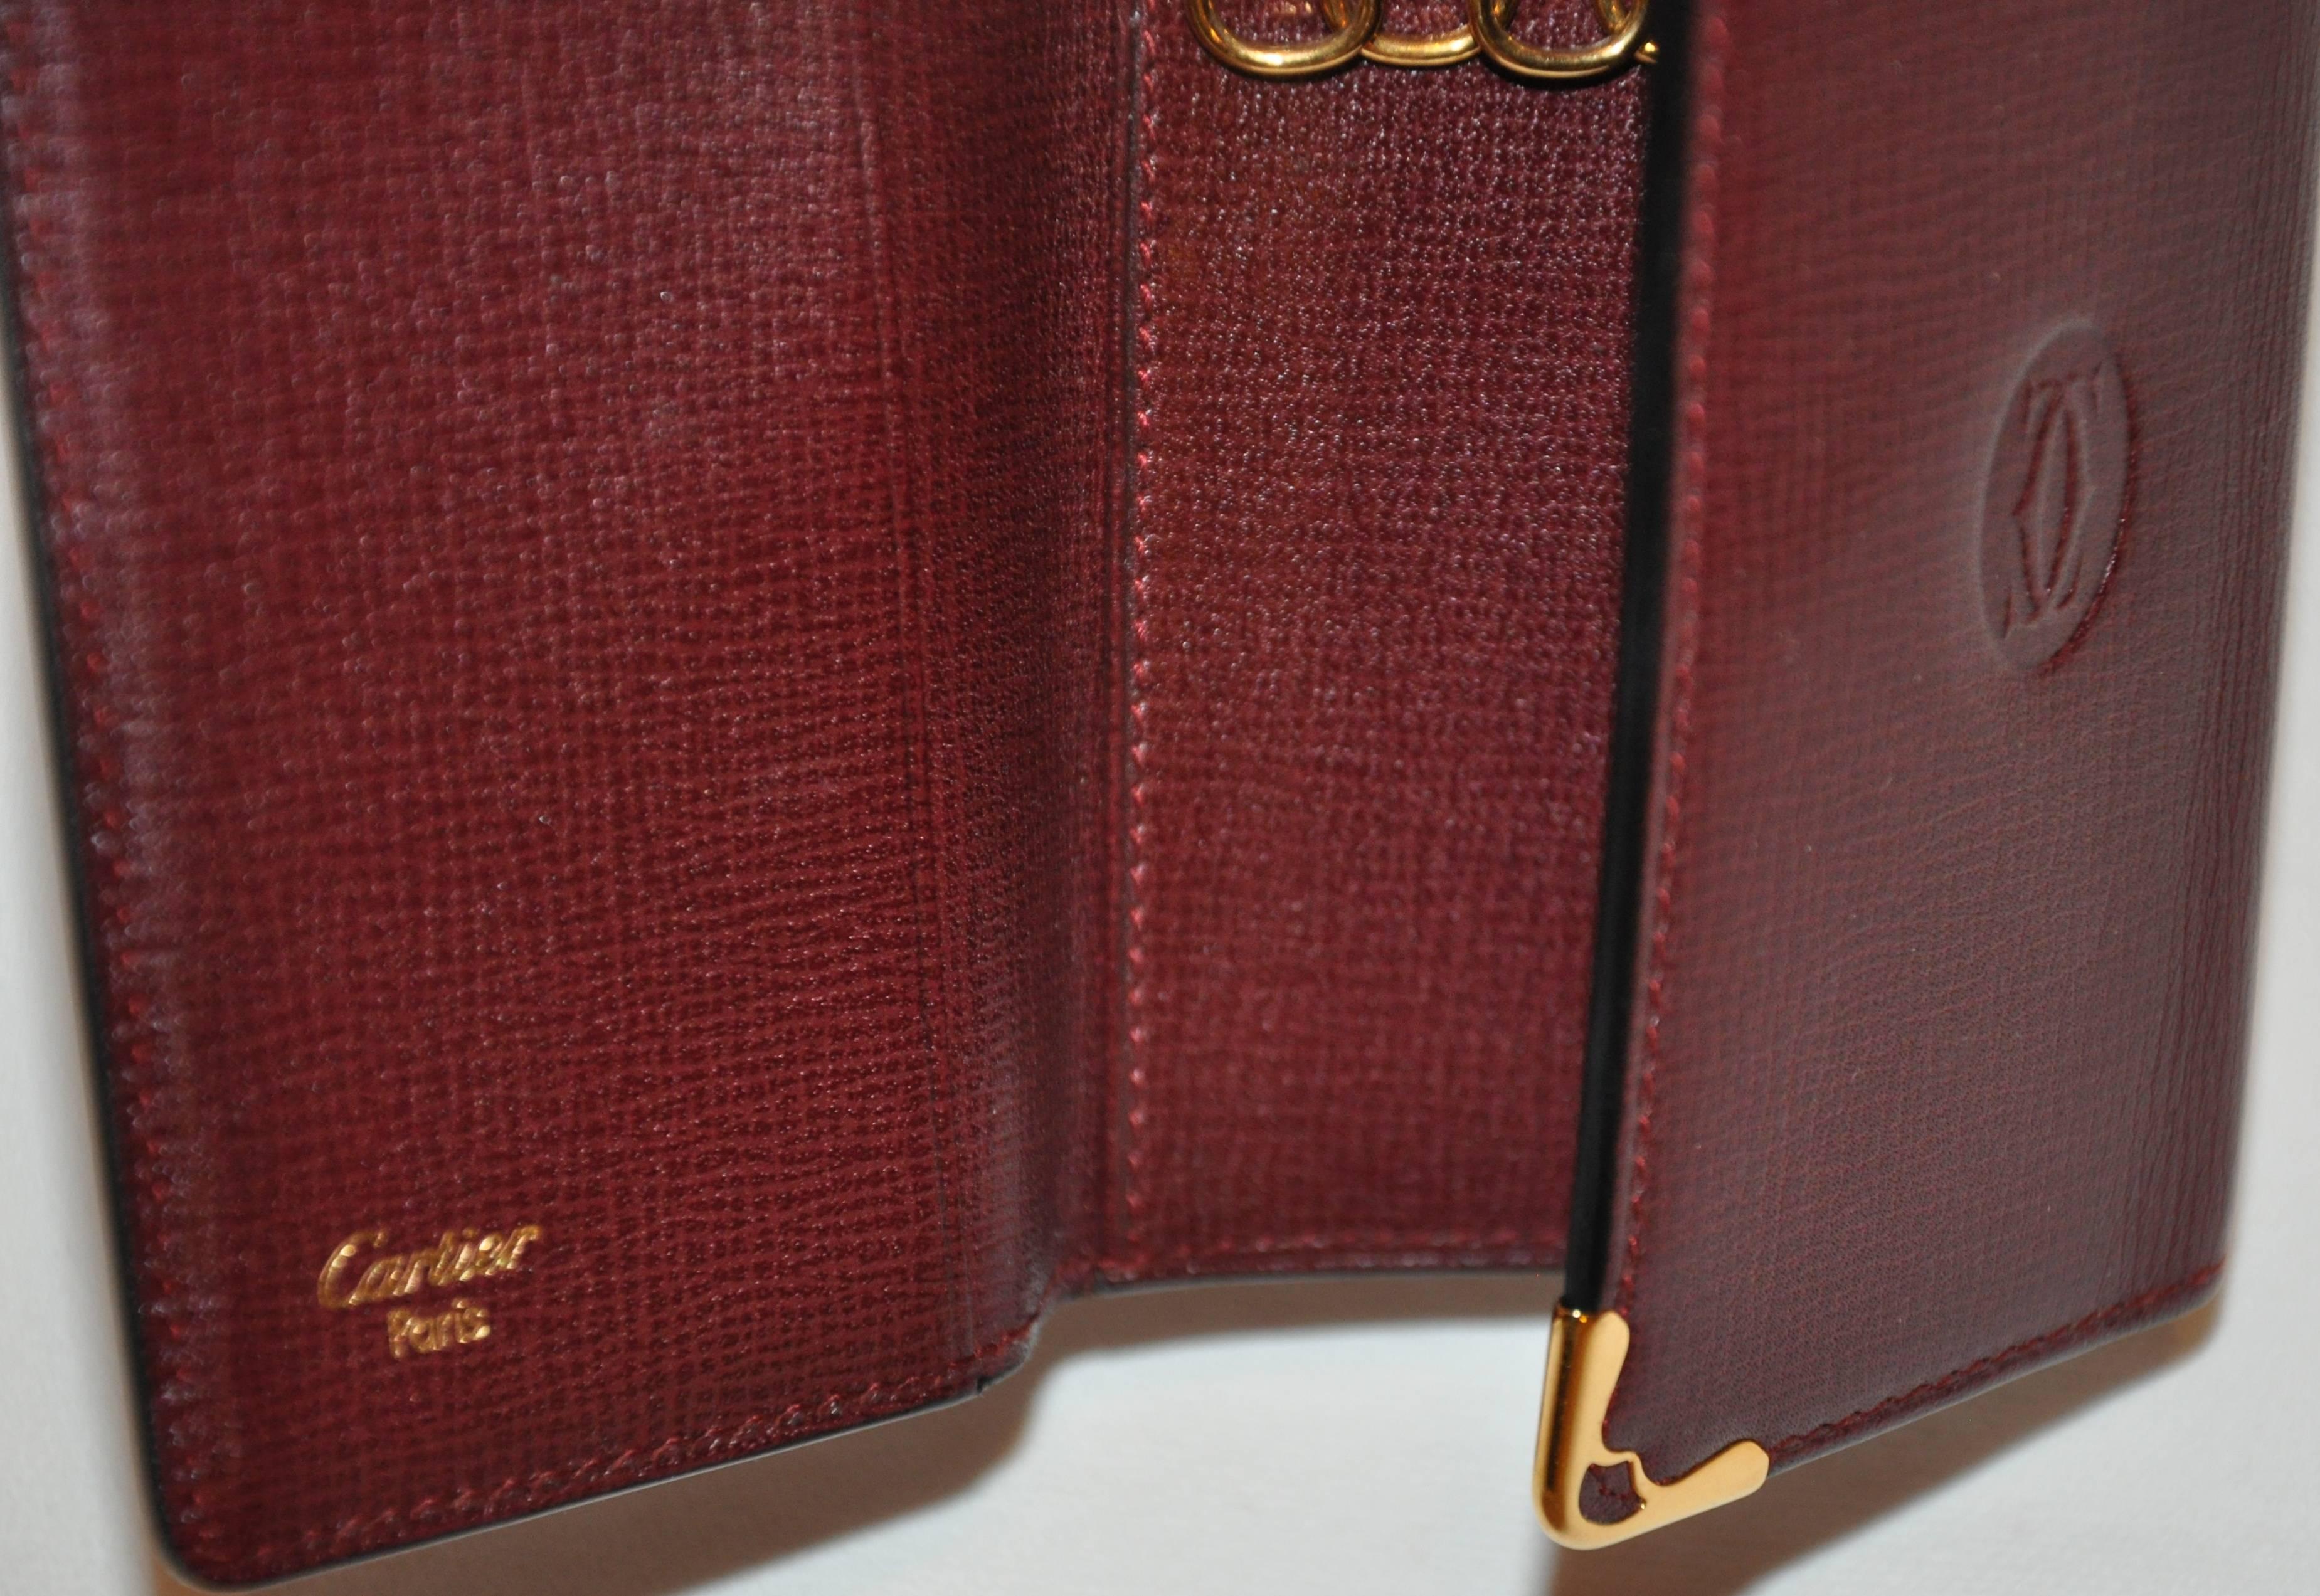        Der für Cartier typische Schlüsselanhänger aus bordeauxfarbenem, strukturiertem Kalbsleder ist an den Ecken mit goldfarbenen Beschlägen verziert. Das charakteristische Logo von Cartier ist elegant in die Mitte eingeprägt. Im geschlossenen